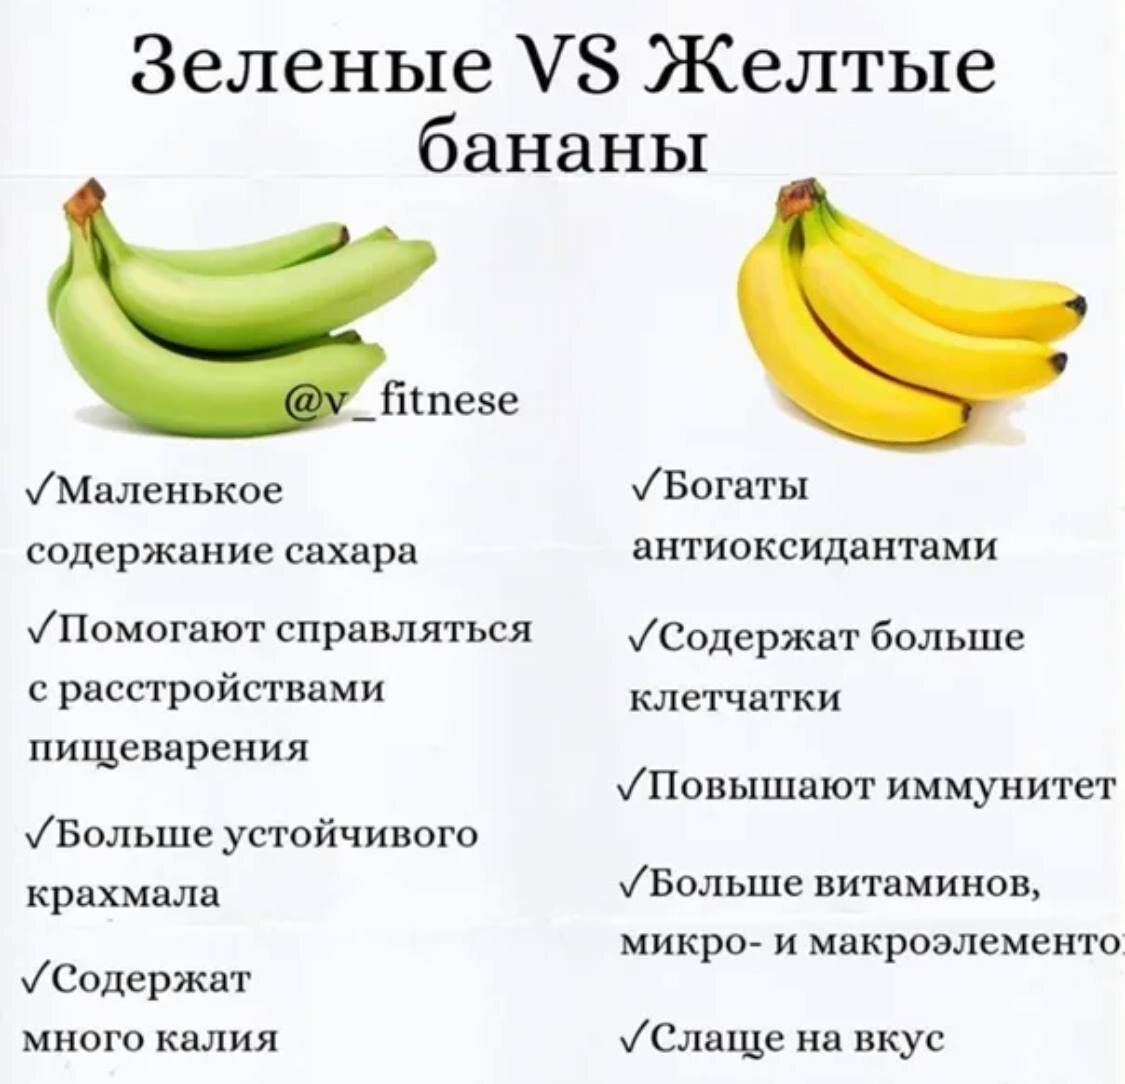 Бананы какой зрелости запрещено выставлять. Какие бананы полезно есть. Калорийность зеленых бананов. Чем полезны зеленые бананы. Какие бананы полезнее есть.